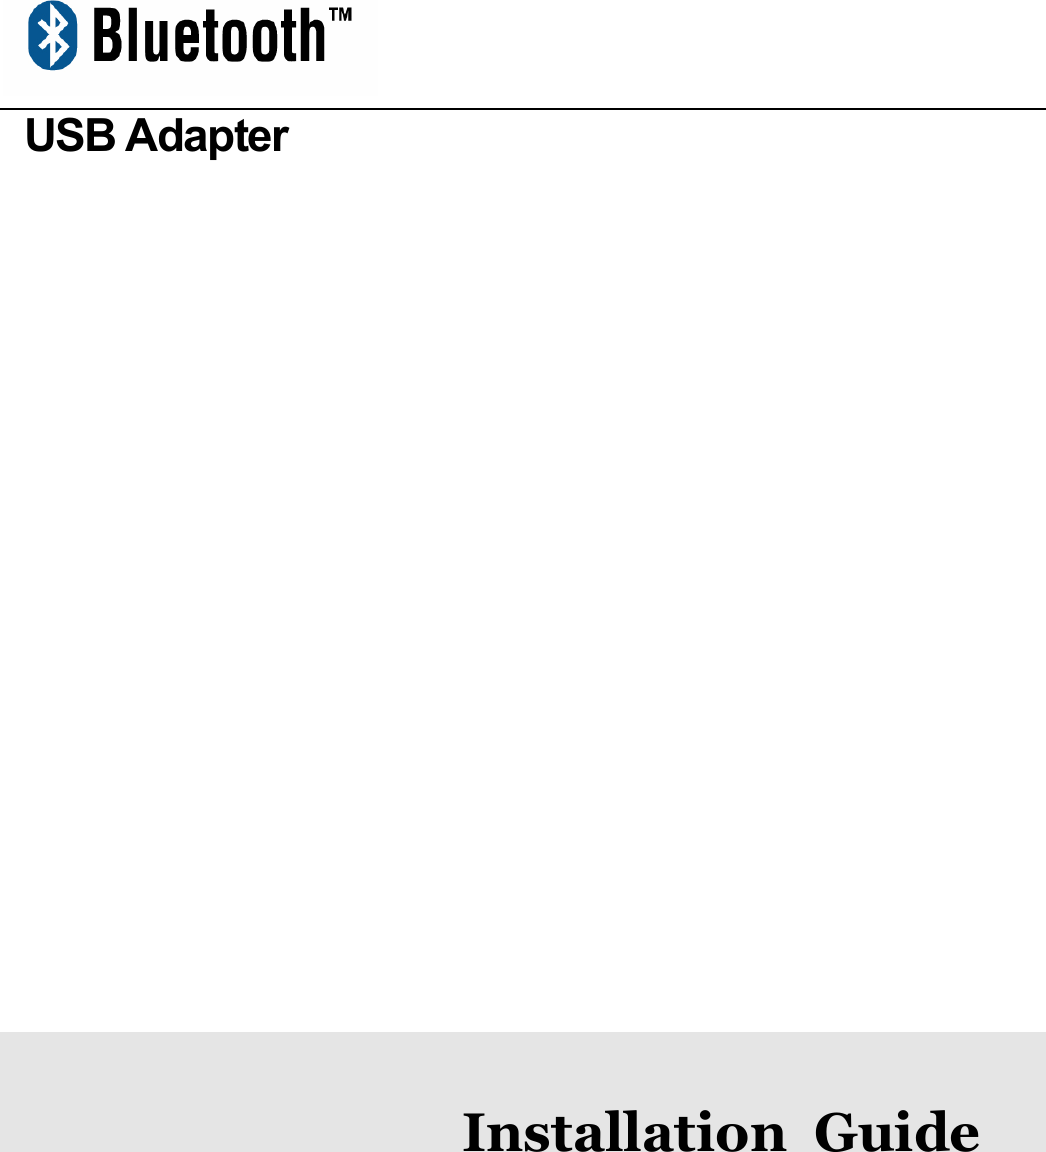  USB Adapter                  Installation Guide1.6.1